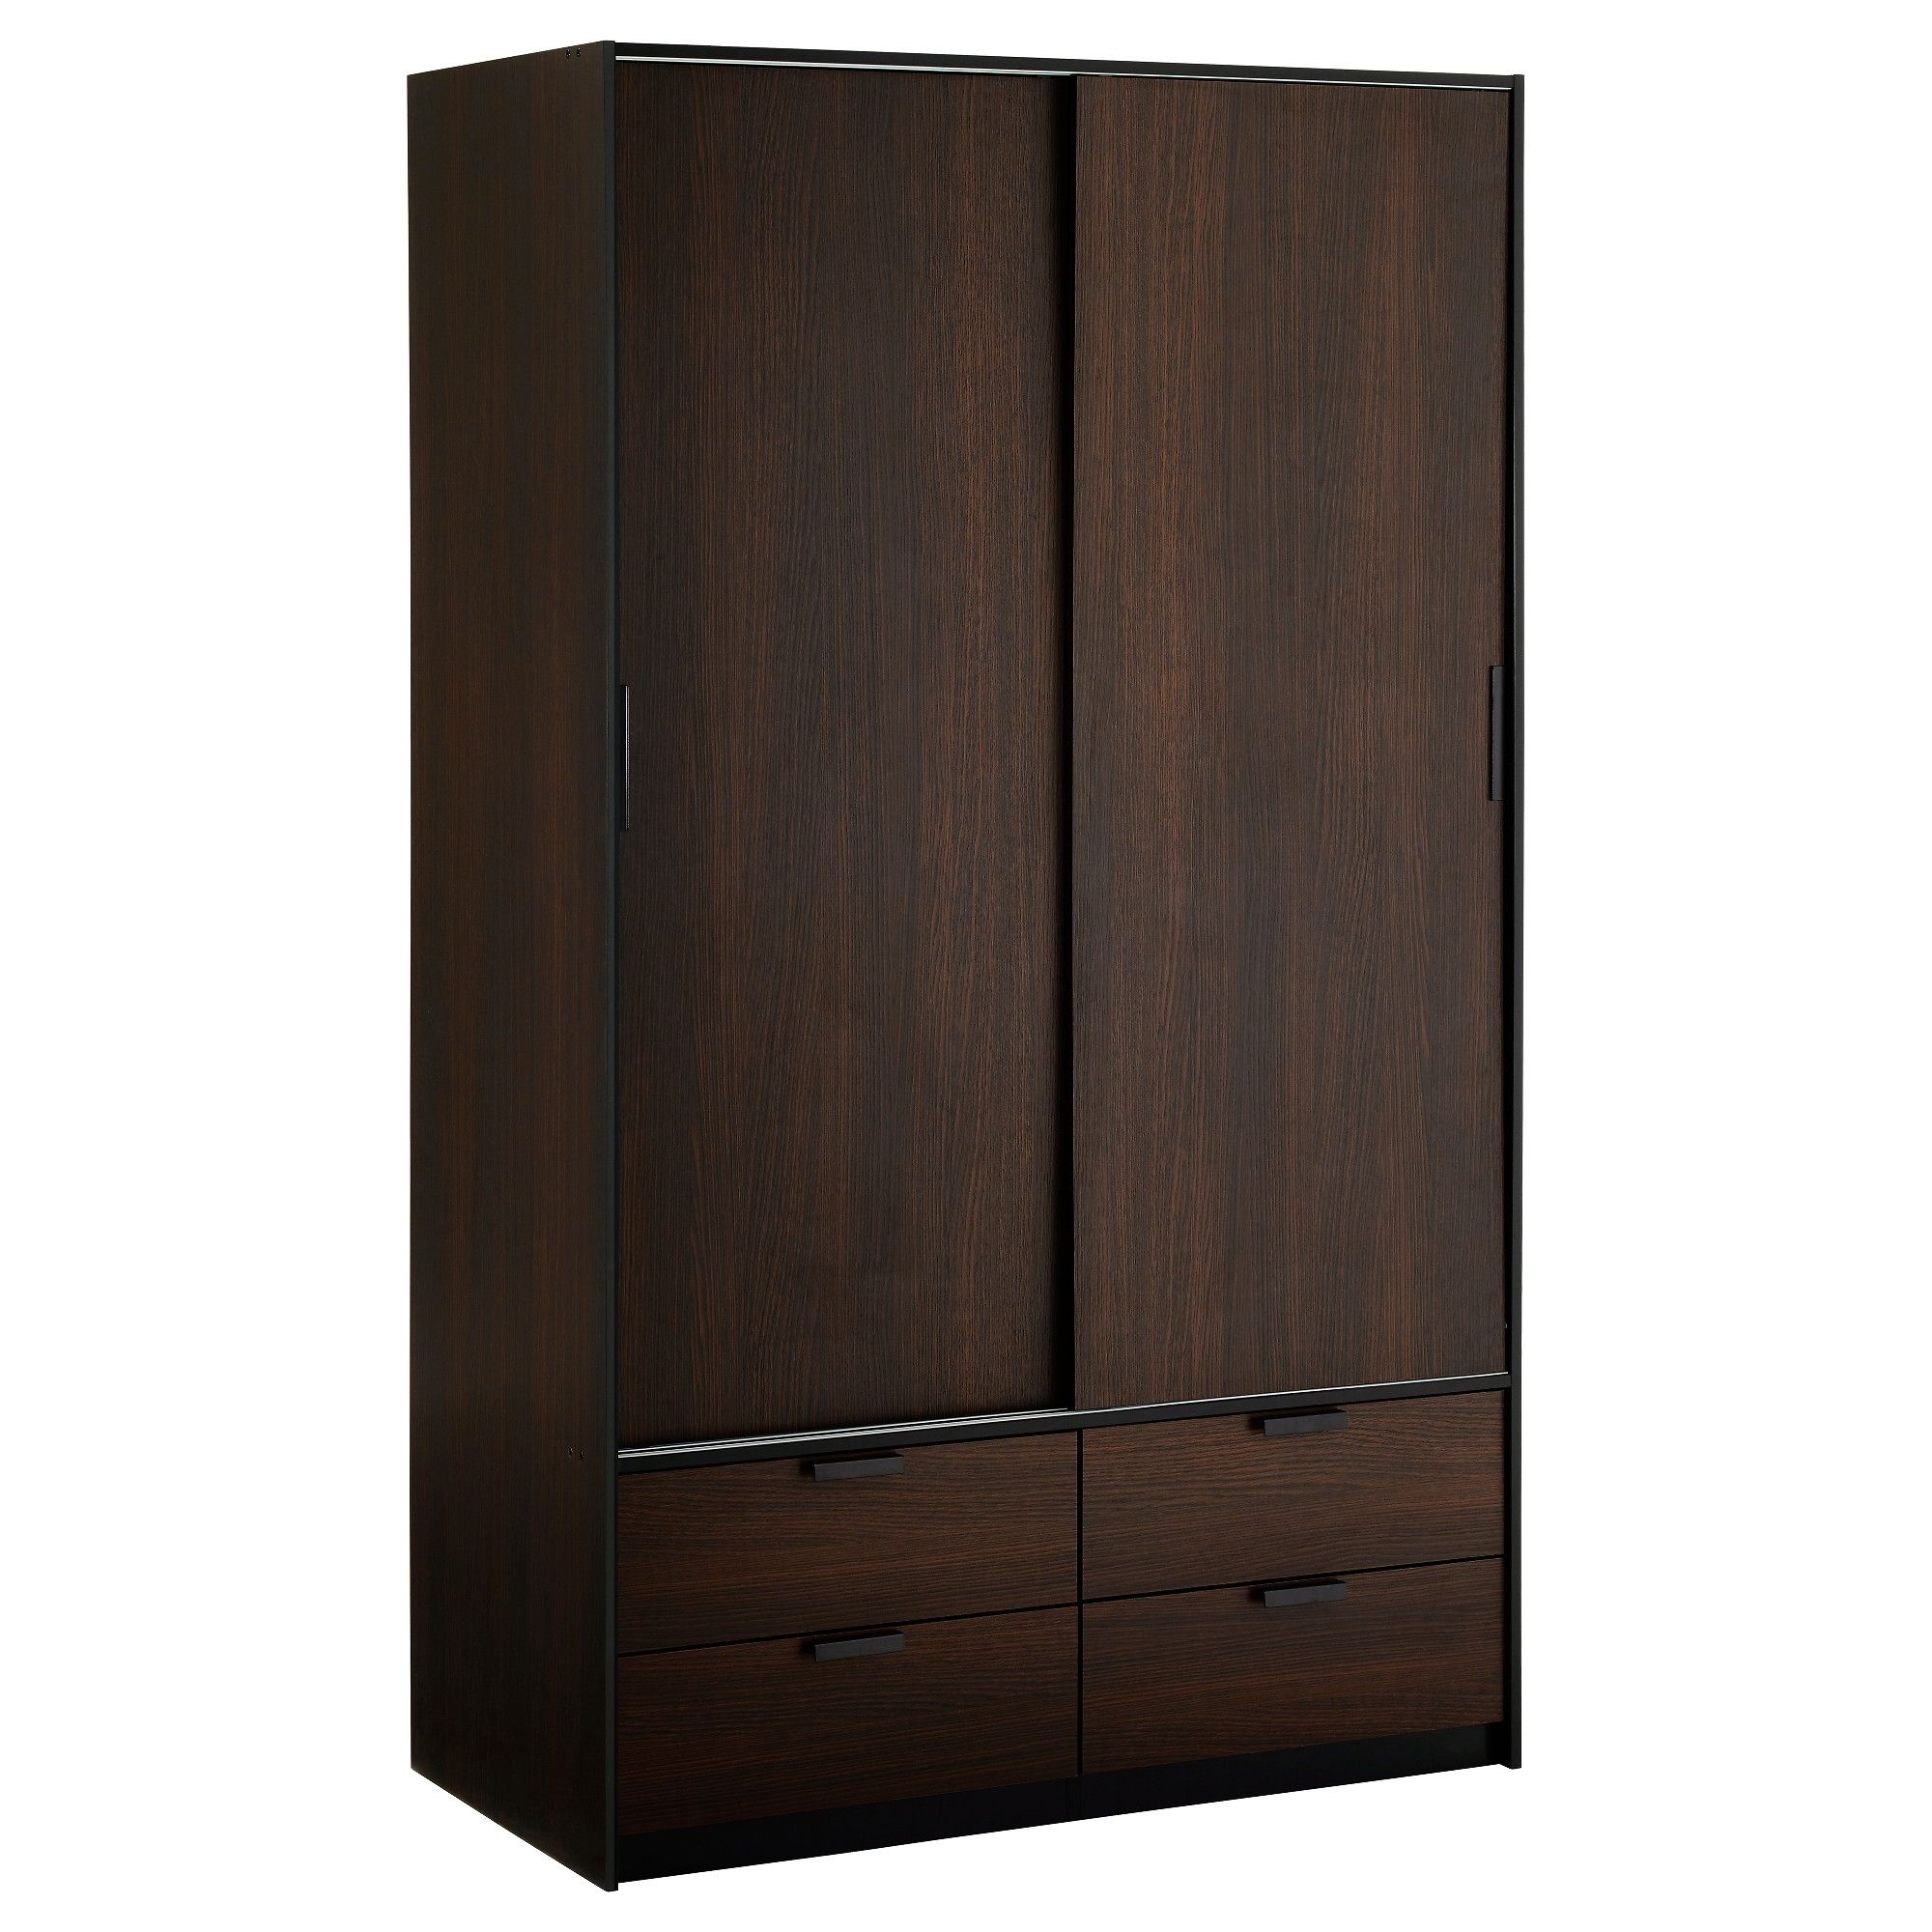 Recent Dark Wood Wardrobes With Sliding Doors With Regard To Trysil Wardrobe W Sliding Doors/4 Drawers – Ikea (View 3 of 15)